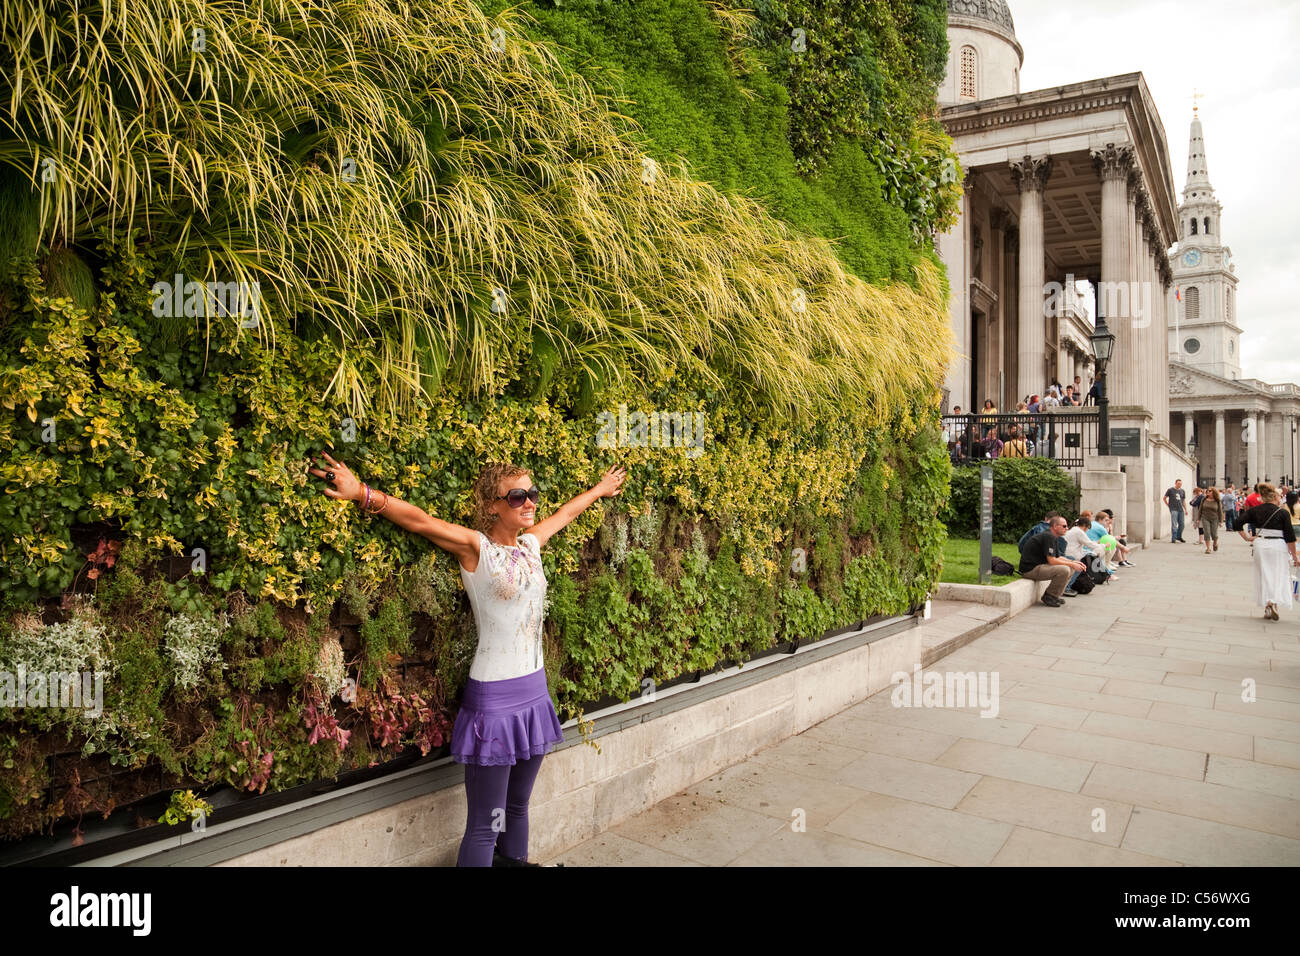 Un turista che viene fotografata davanti a 'Un capolavoro vivente' - Trafalgar Square London REGNO UNITO Foto Stock